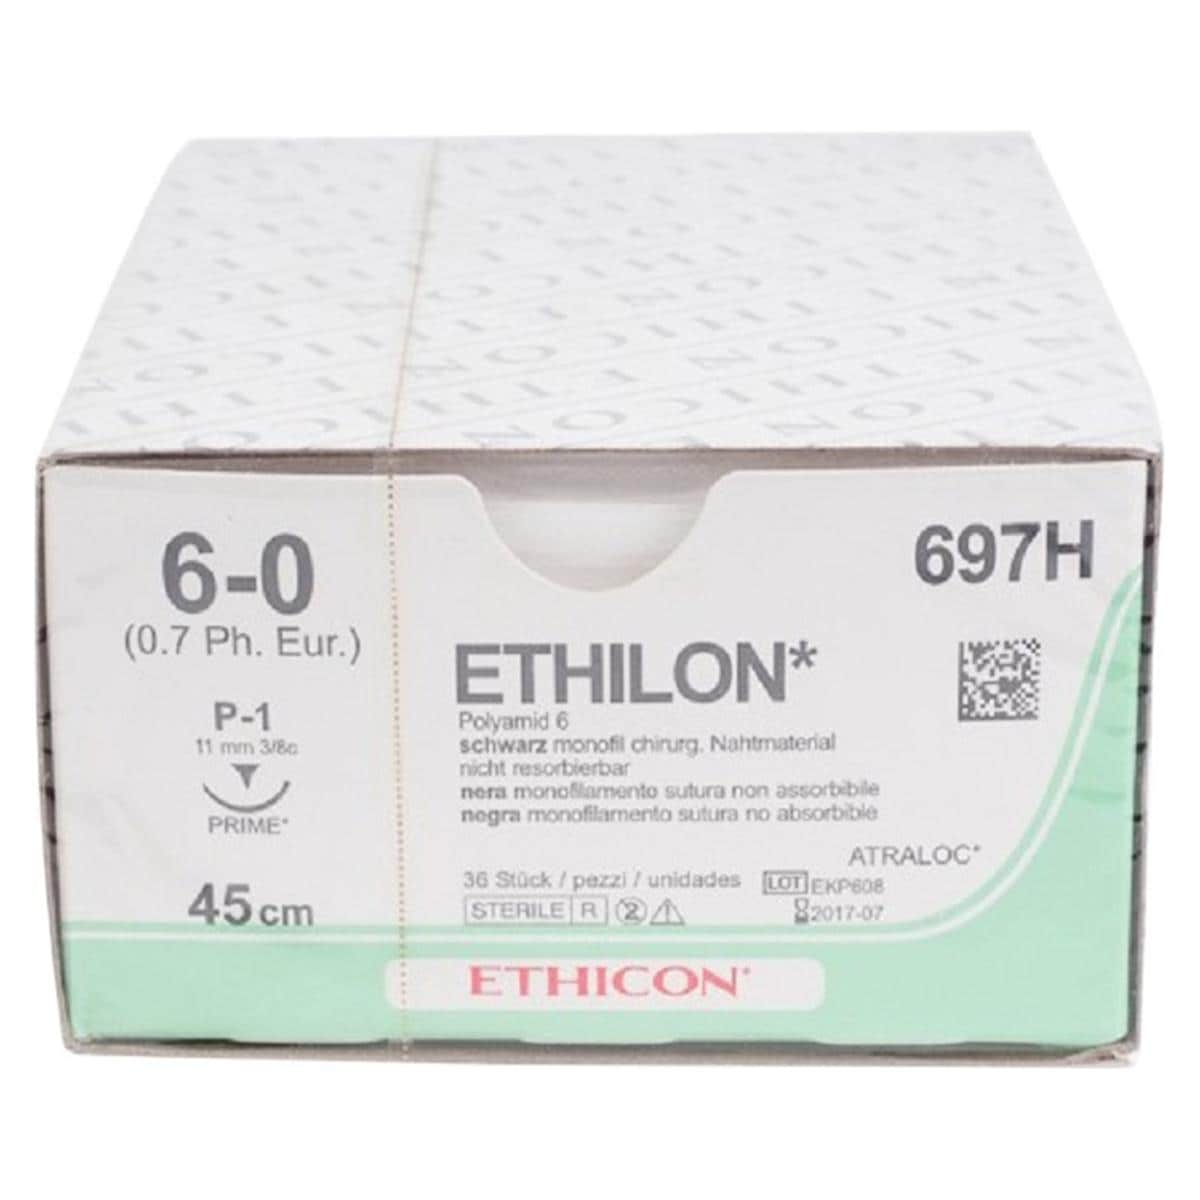 ETHILON schwarz, monofil - Nadeltyp PRIME P1 - USP 6-0, Länge 0,45 m (697 H), Packung 36 Stück